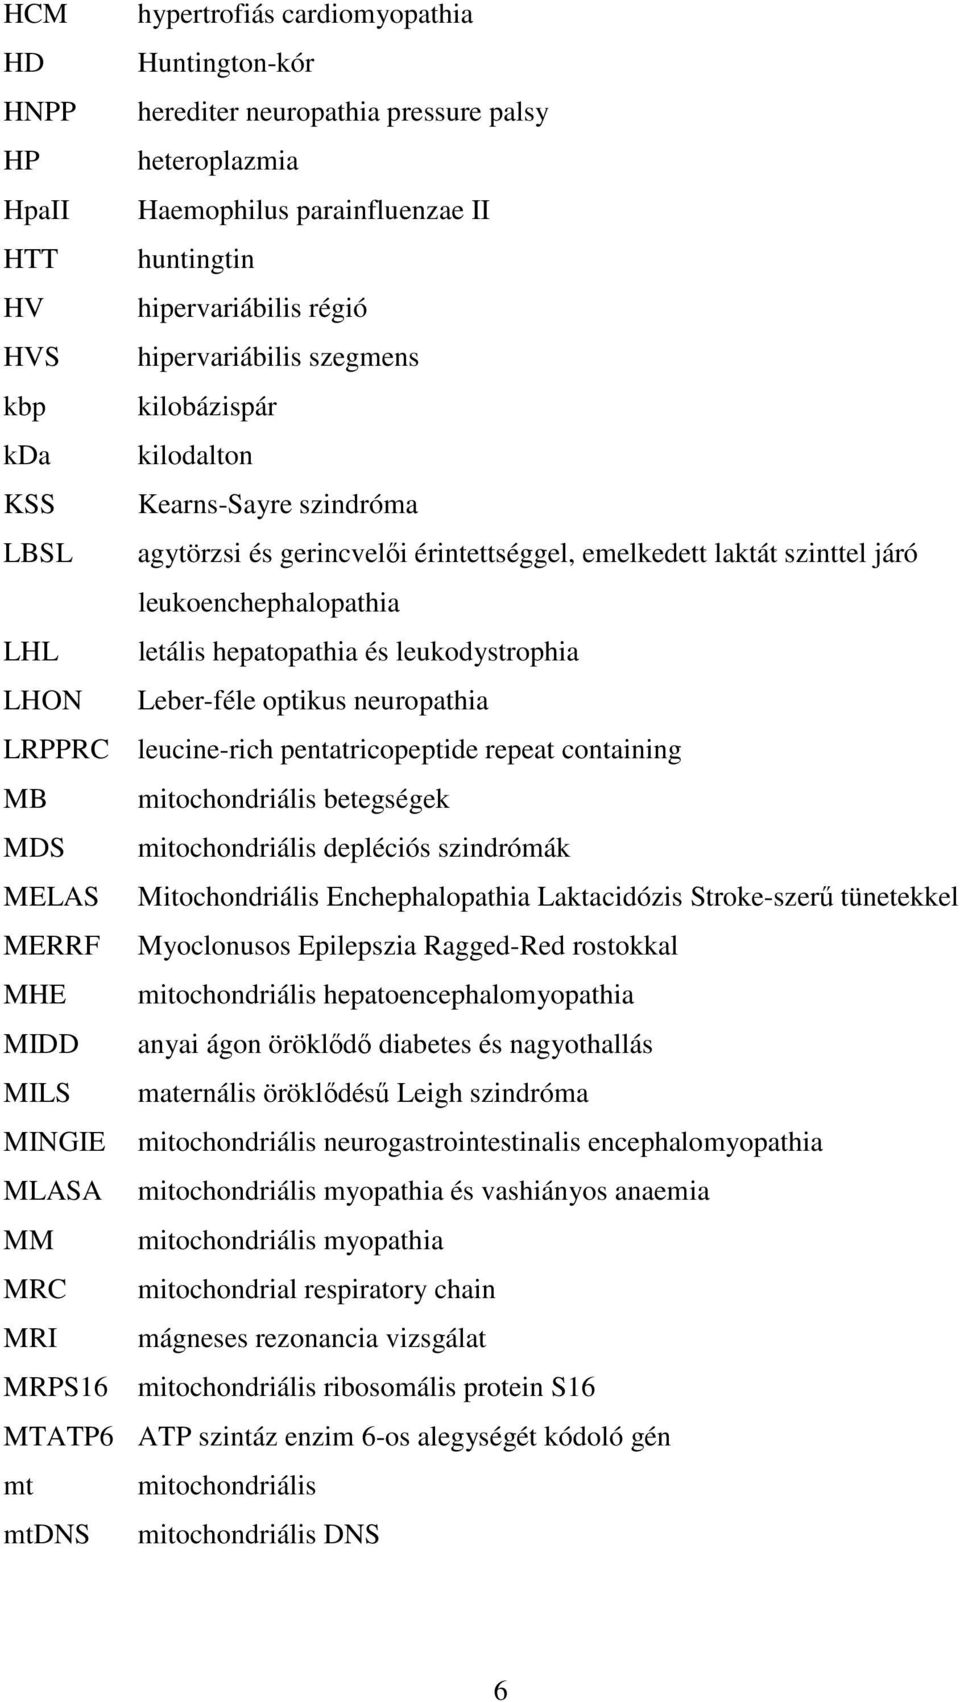 hepatopathia és leukodystrophia LHON Leber-féle optikus neuropathia LRPPRC leucine-rich pentatricopeptide repeat containing MB mitochondriális betegségek MDS mitochondriális depléciós szindrómák